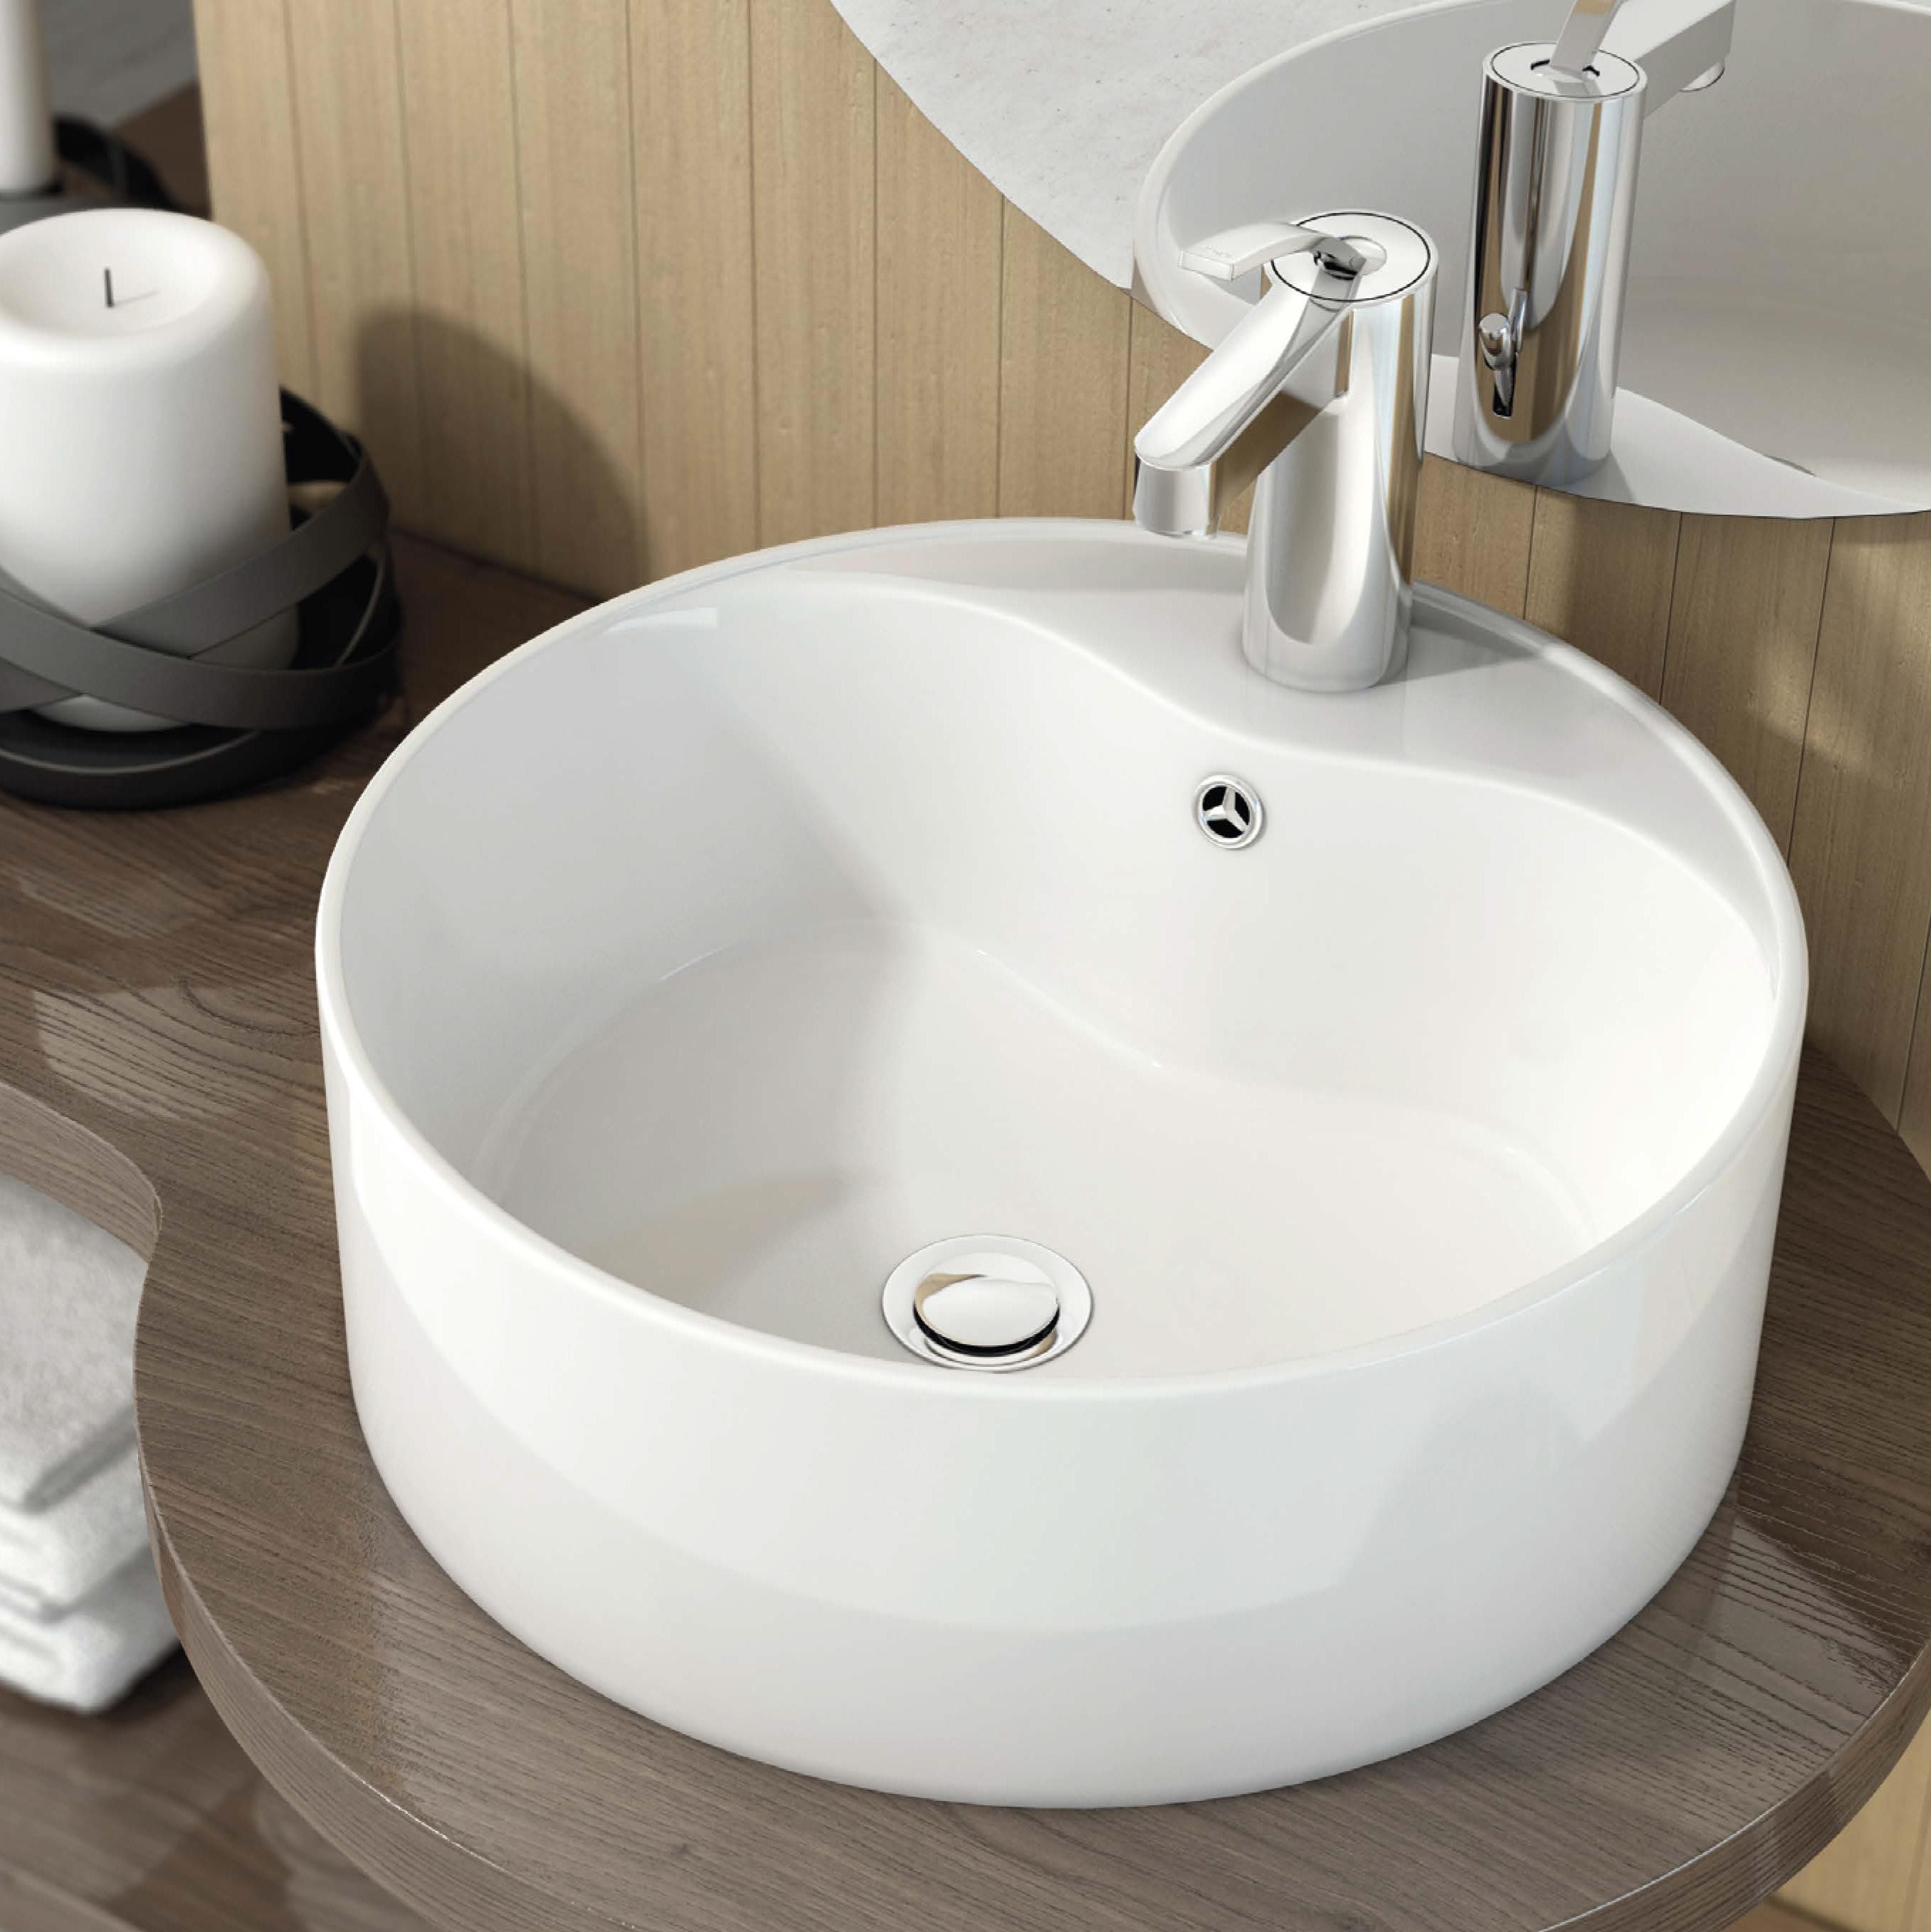 Válvula lavabo clic clac tapón cerámico - Platos de ducha y mamparas